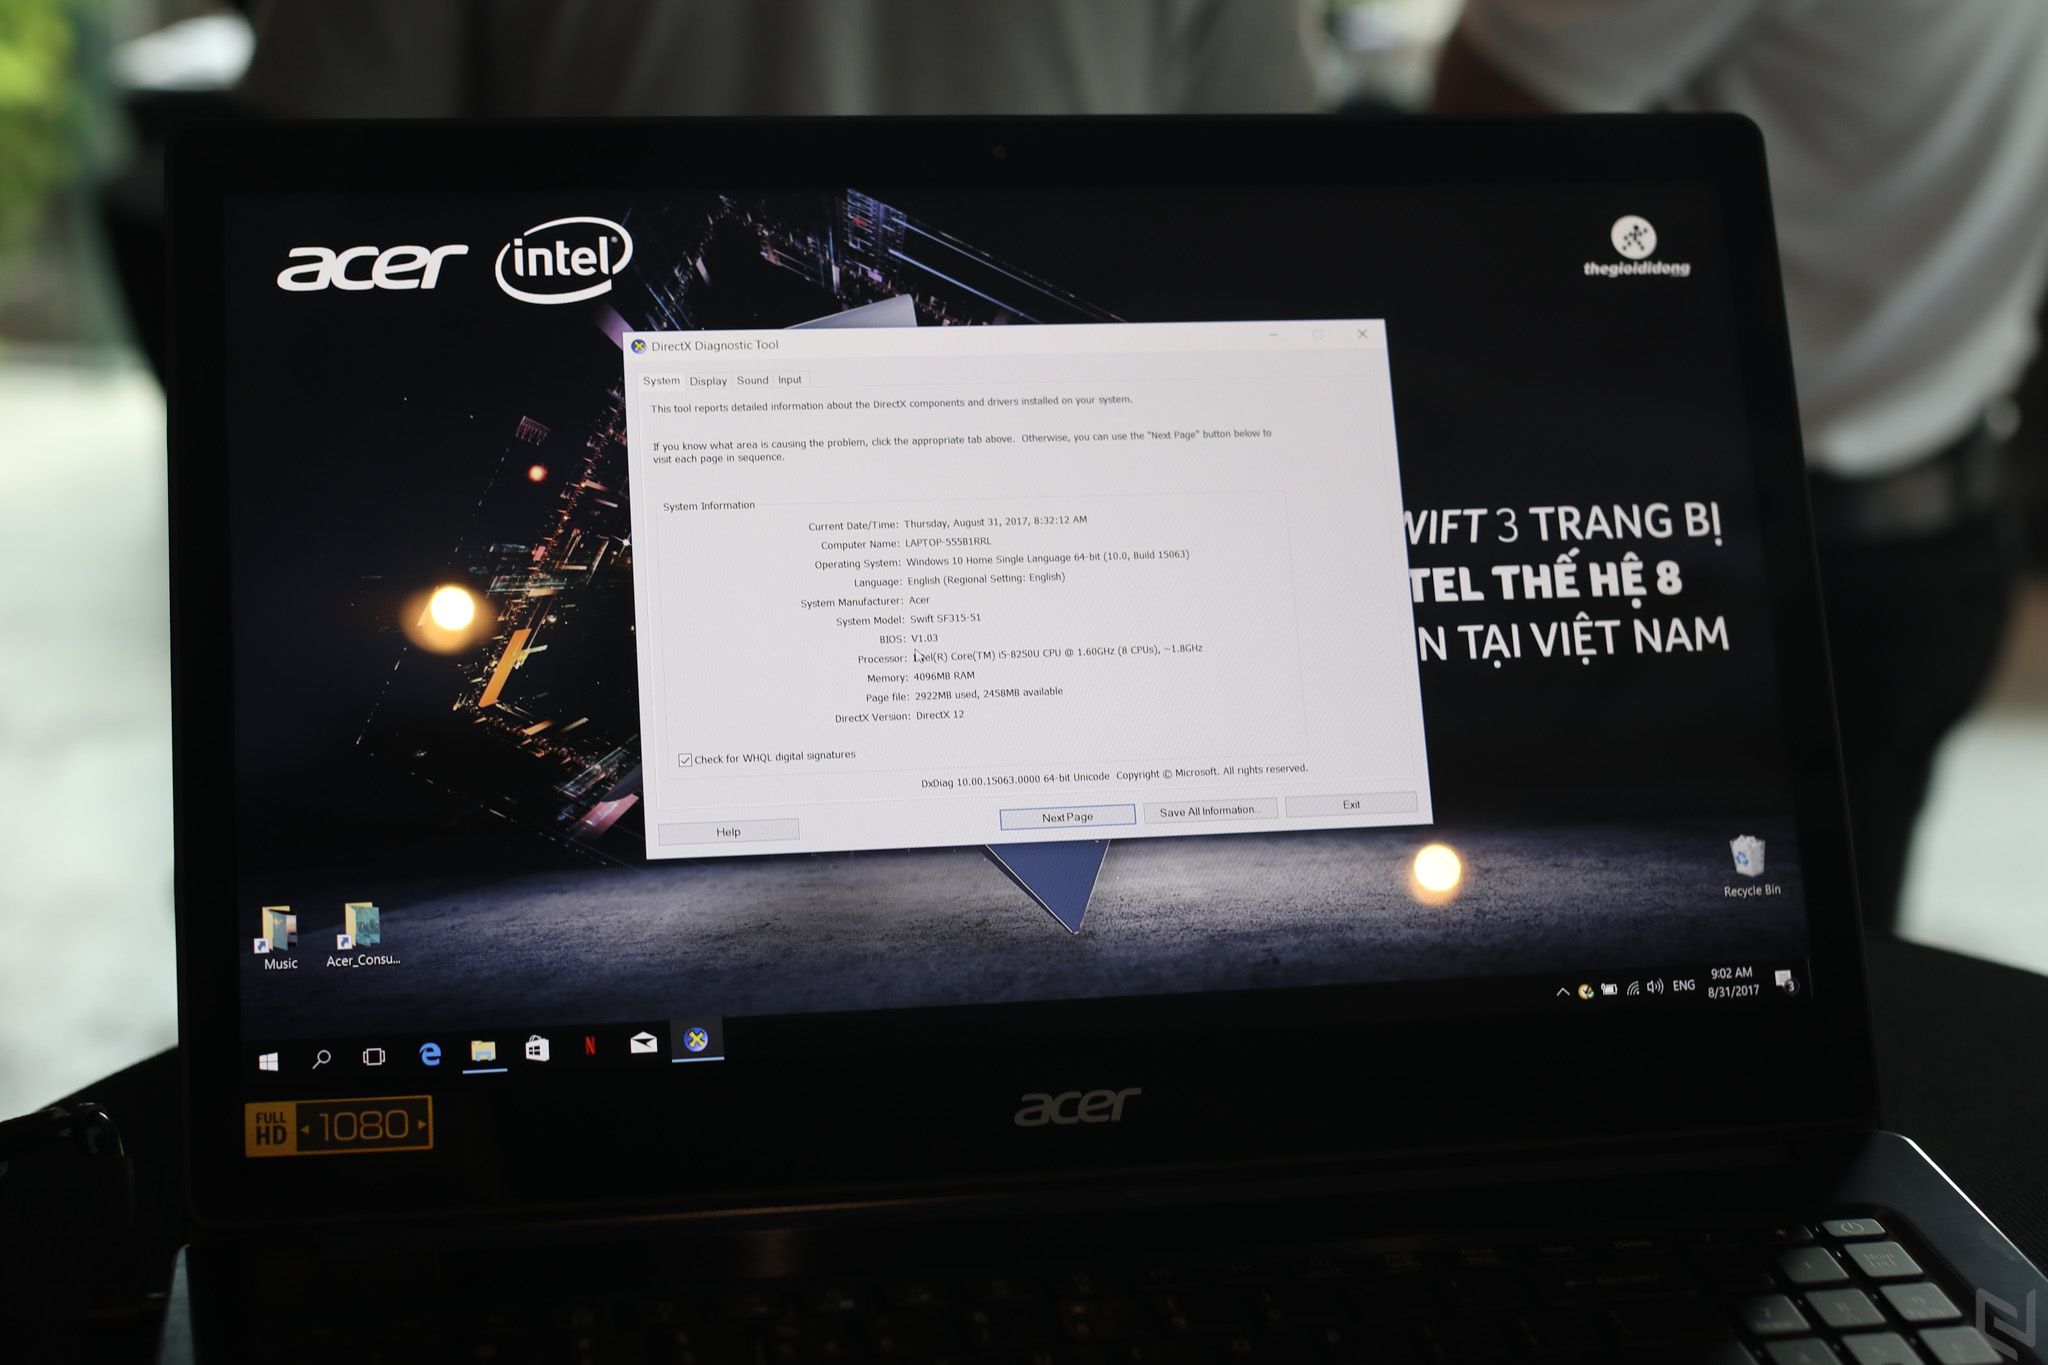 Acer chính thức trình làng Swift 3, laptop chạy vi xử lý Core i thế hệ thứ 8 đầu tiên tại Việt Nam